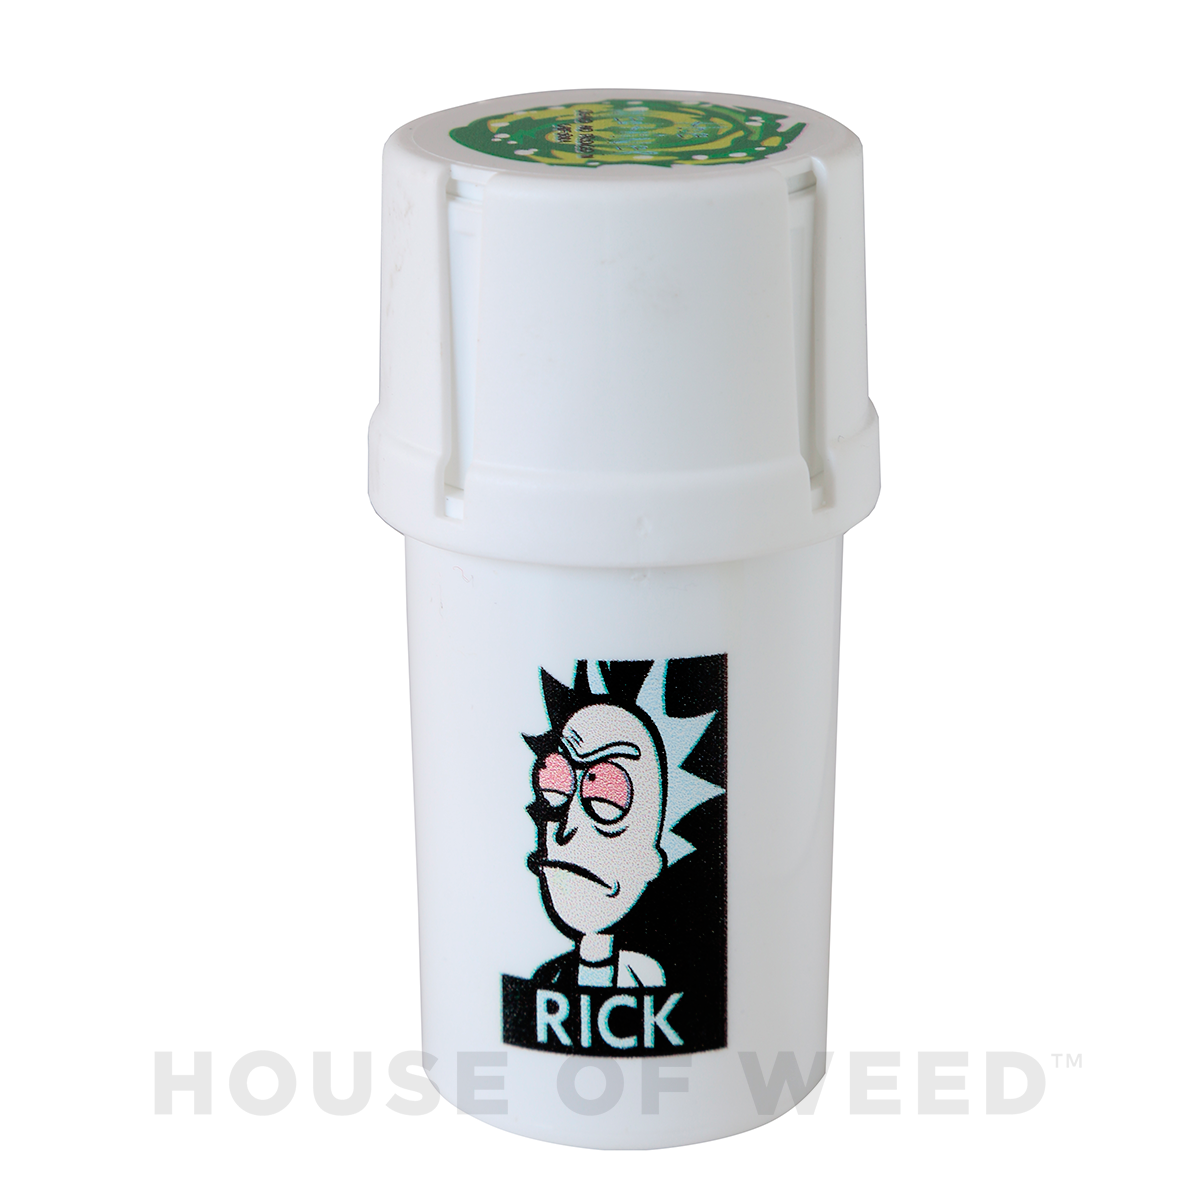 Moledor y contenedor de la marca Medtainer con la figura de Rick de la serie Rick and Morty